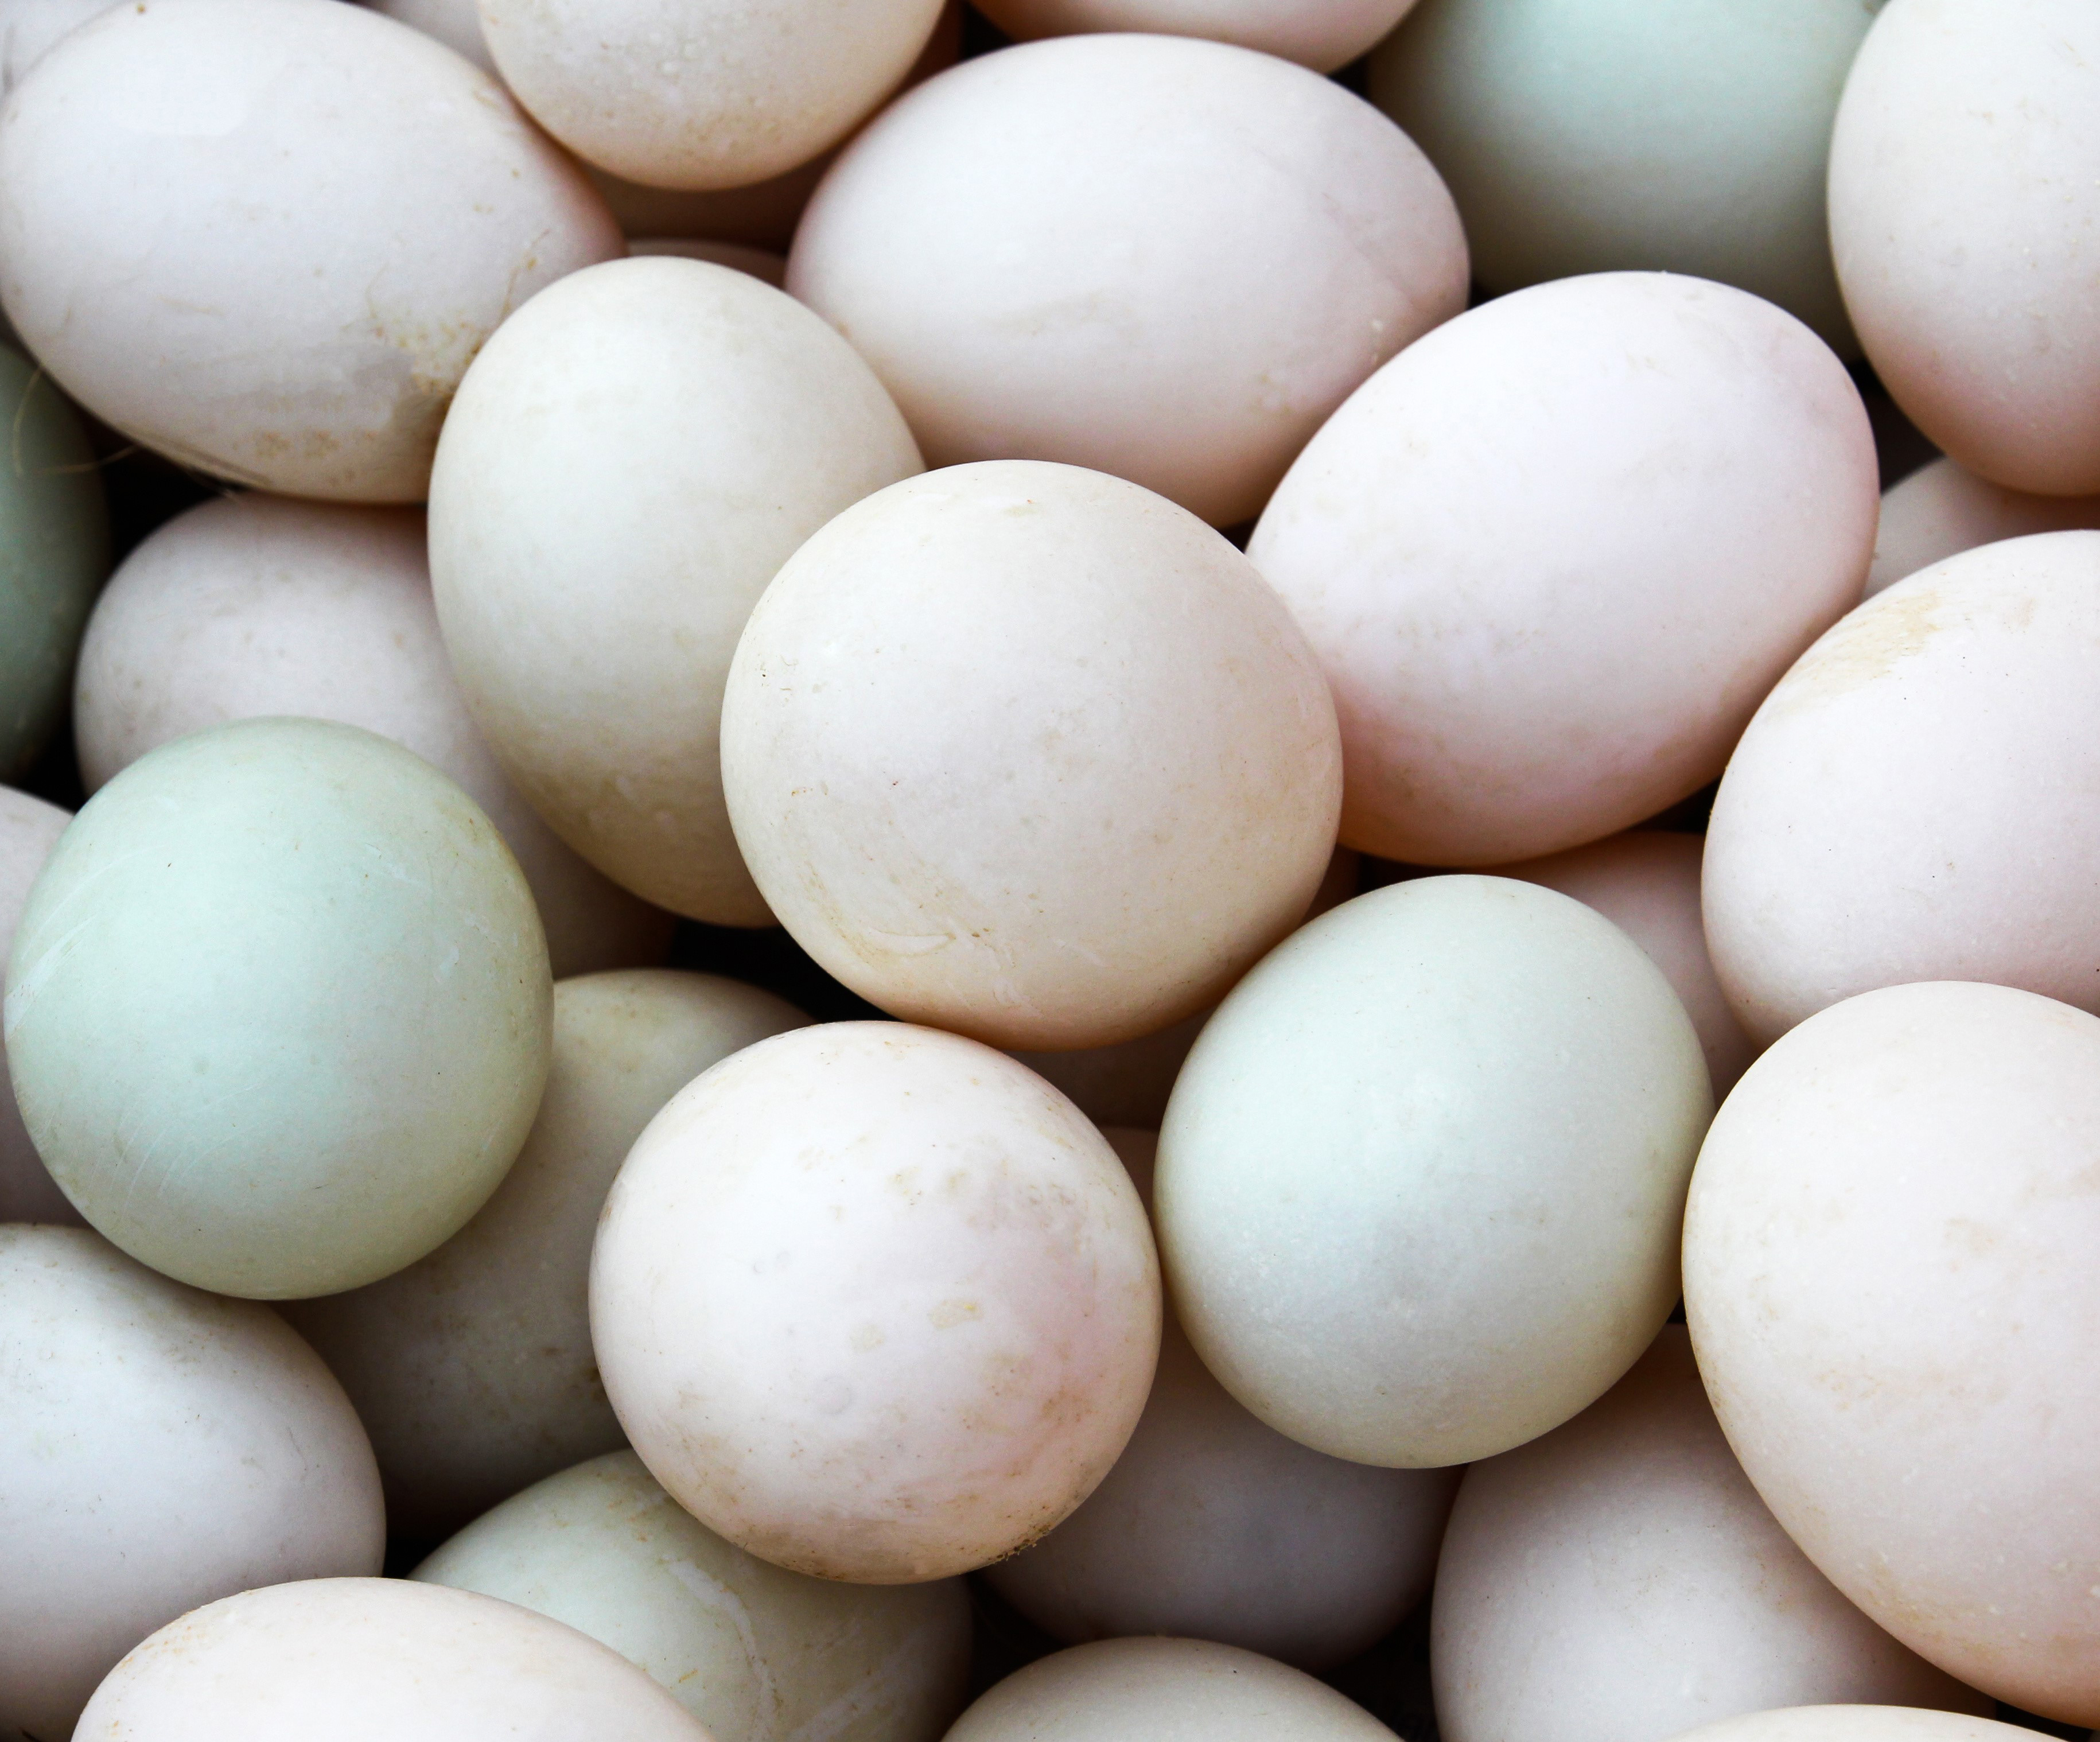 Duck Hatching Eggs for Sale Online, Buy Duck Hatching Eggs Online